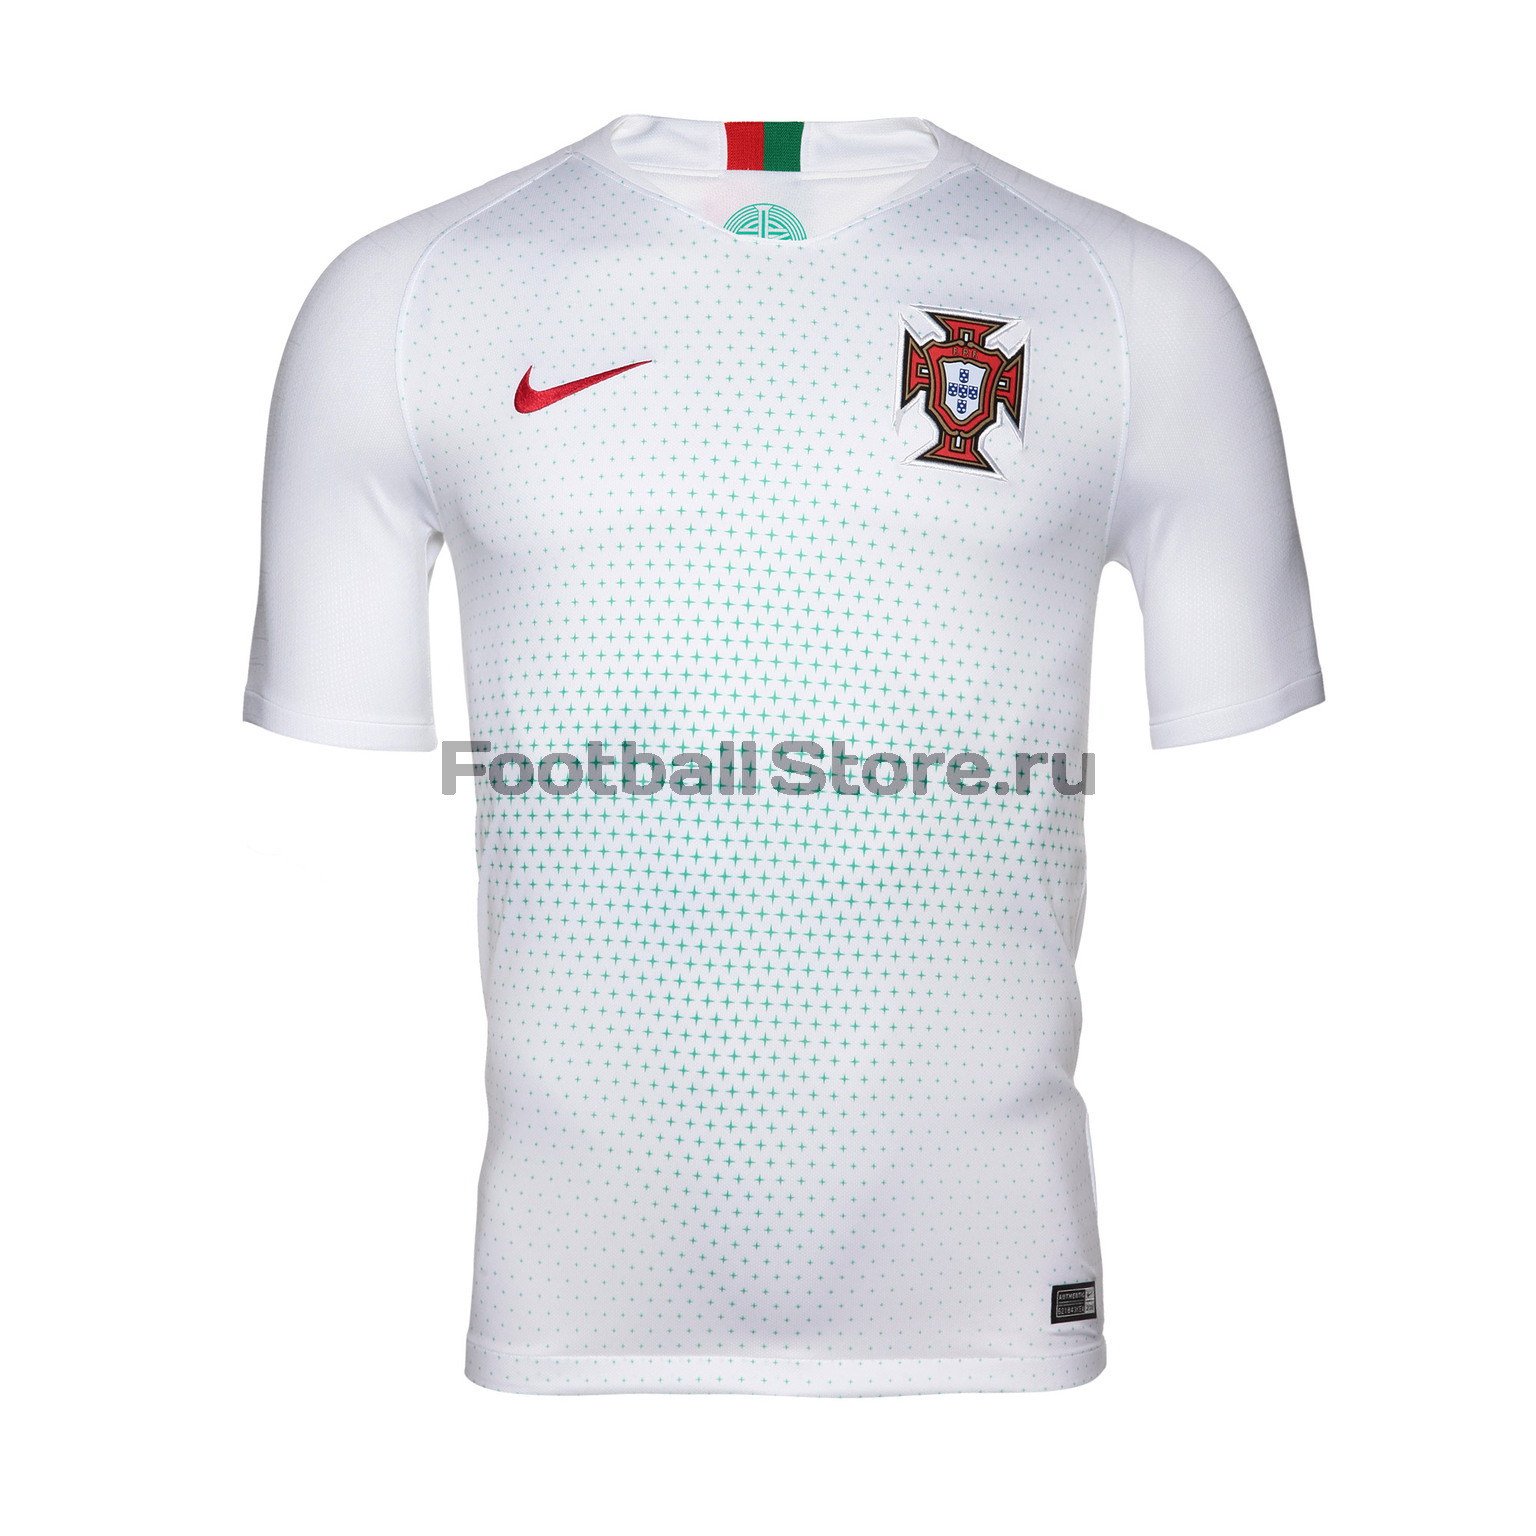 Футболка гостевая Nike сборной Португалии 893876-100